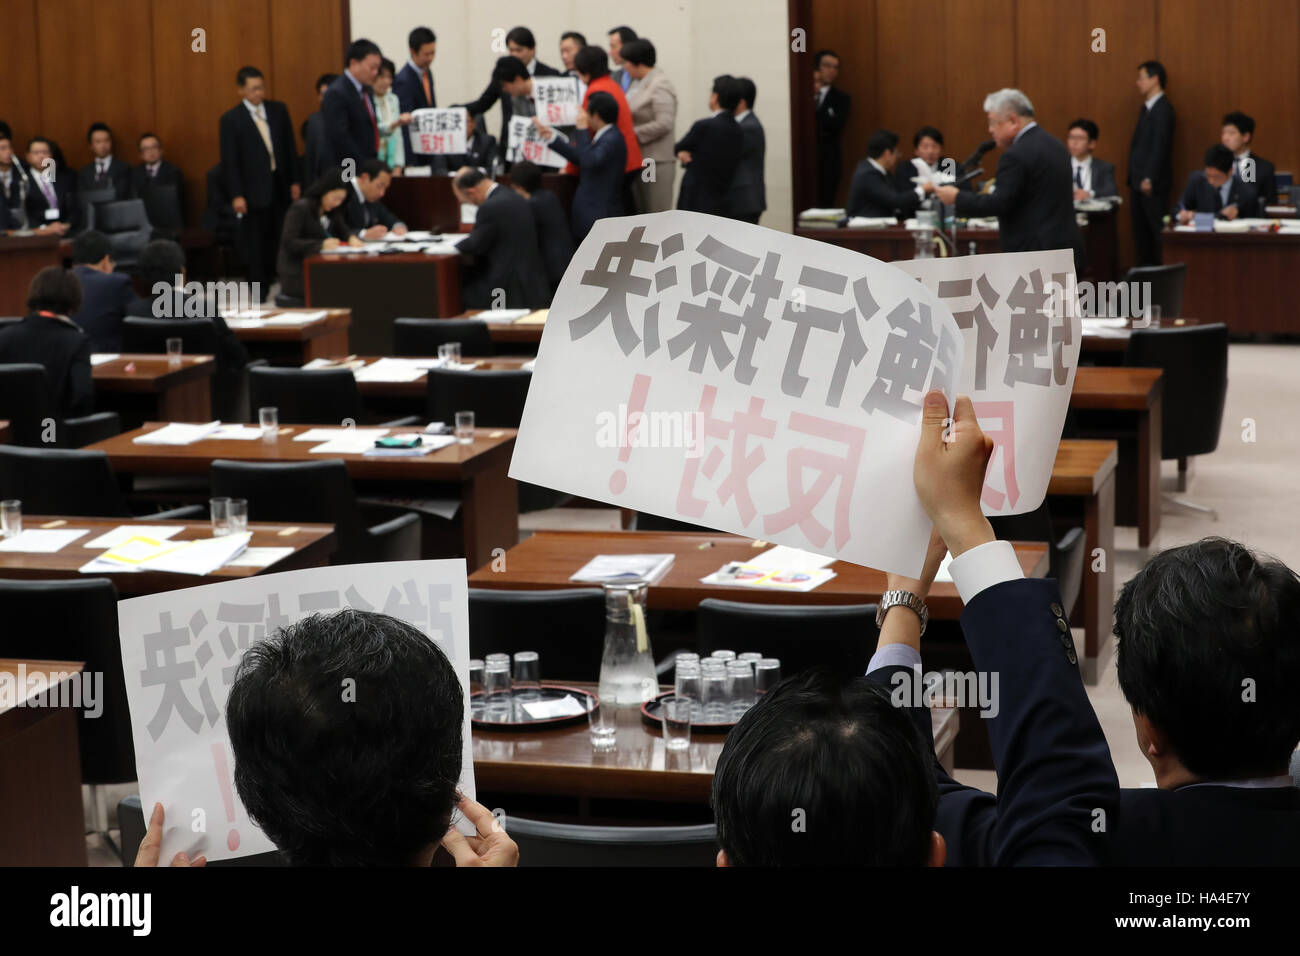 Tokio, Japón. 25 Nov, 2016. Los legisladores de la oposición se apresuran a presidente Hideki Niwa y mostrar pancartas "oponerse por la fuerza a la aprobación del proyecto de ley' en la salud, trabajo y Welfarre sesión del Comité de la Cámara Baja de la Dieta Nacional en Tokio el viernes, 25 de noviembre de 2016. Los partidos de la coalición gobernante promulgó la ley de reforma de pensiones del gobierno durante el período de sesiones del Comité, mientras que los miembros de los partidos de oposición en contra de la protesta obligó a la aprobación del proyecto de ley. © Yoshio Tsunoda/AFLO/Alamy Live News Foto de stock